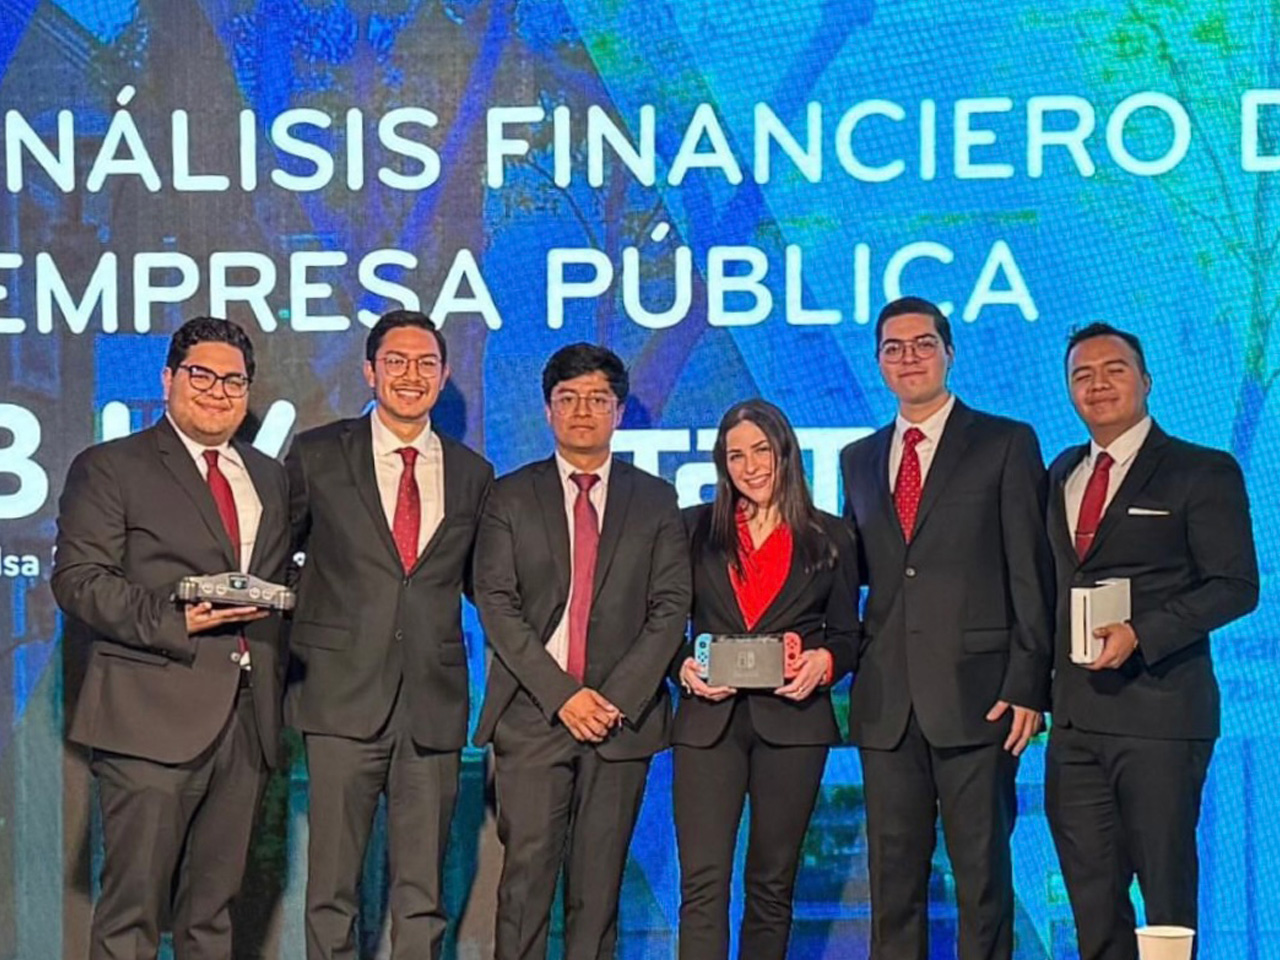 Bolsa Institucional de Valores y el ITAM reconocen al mejor análisis financiero de una empresa pública